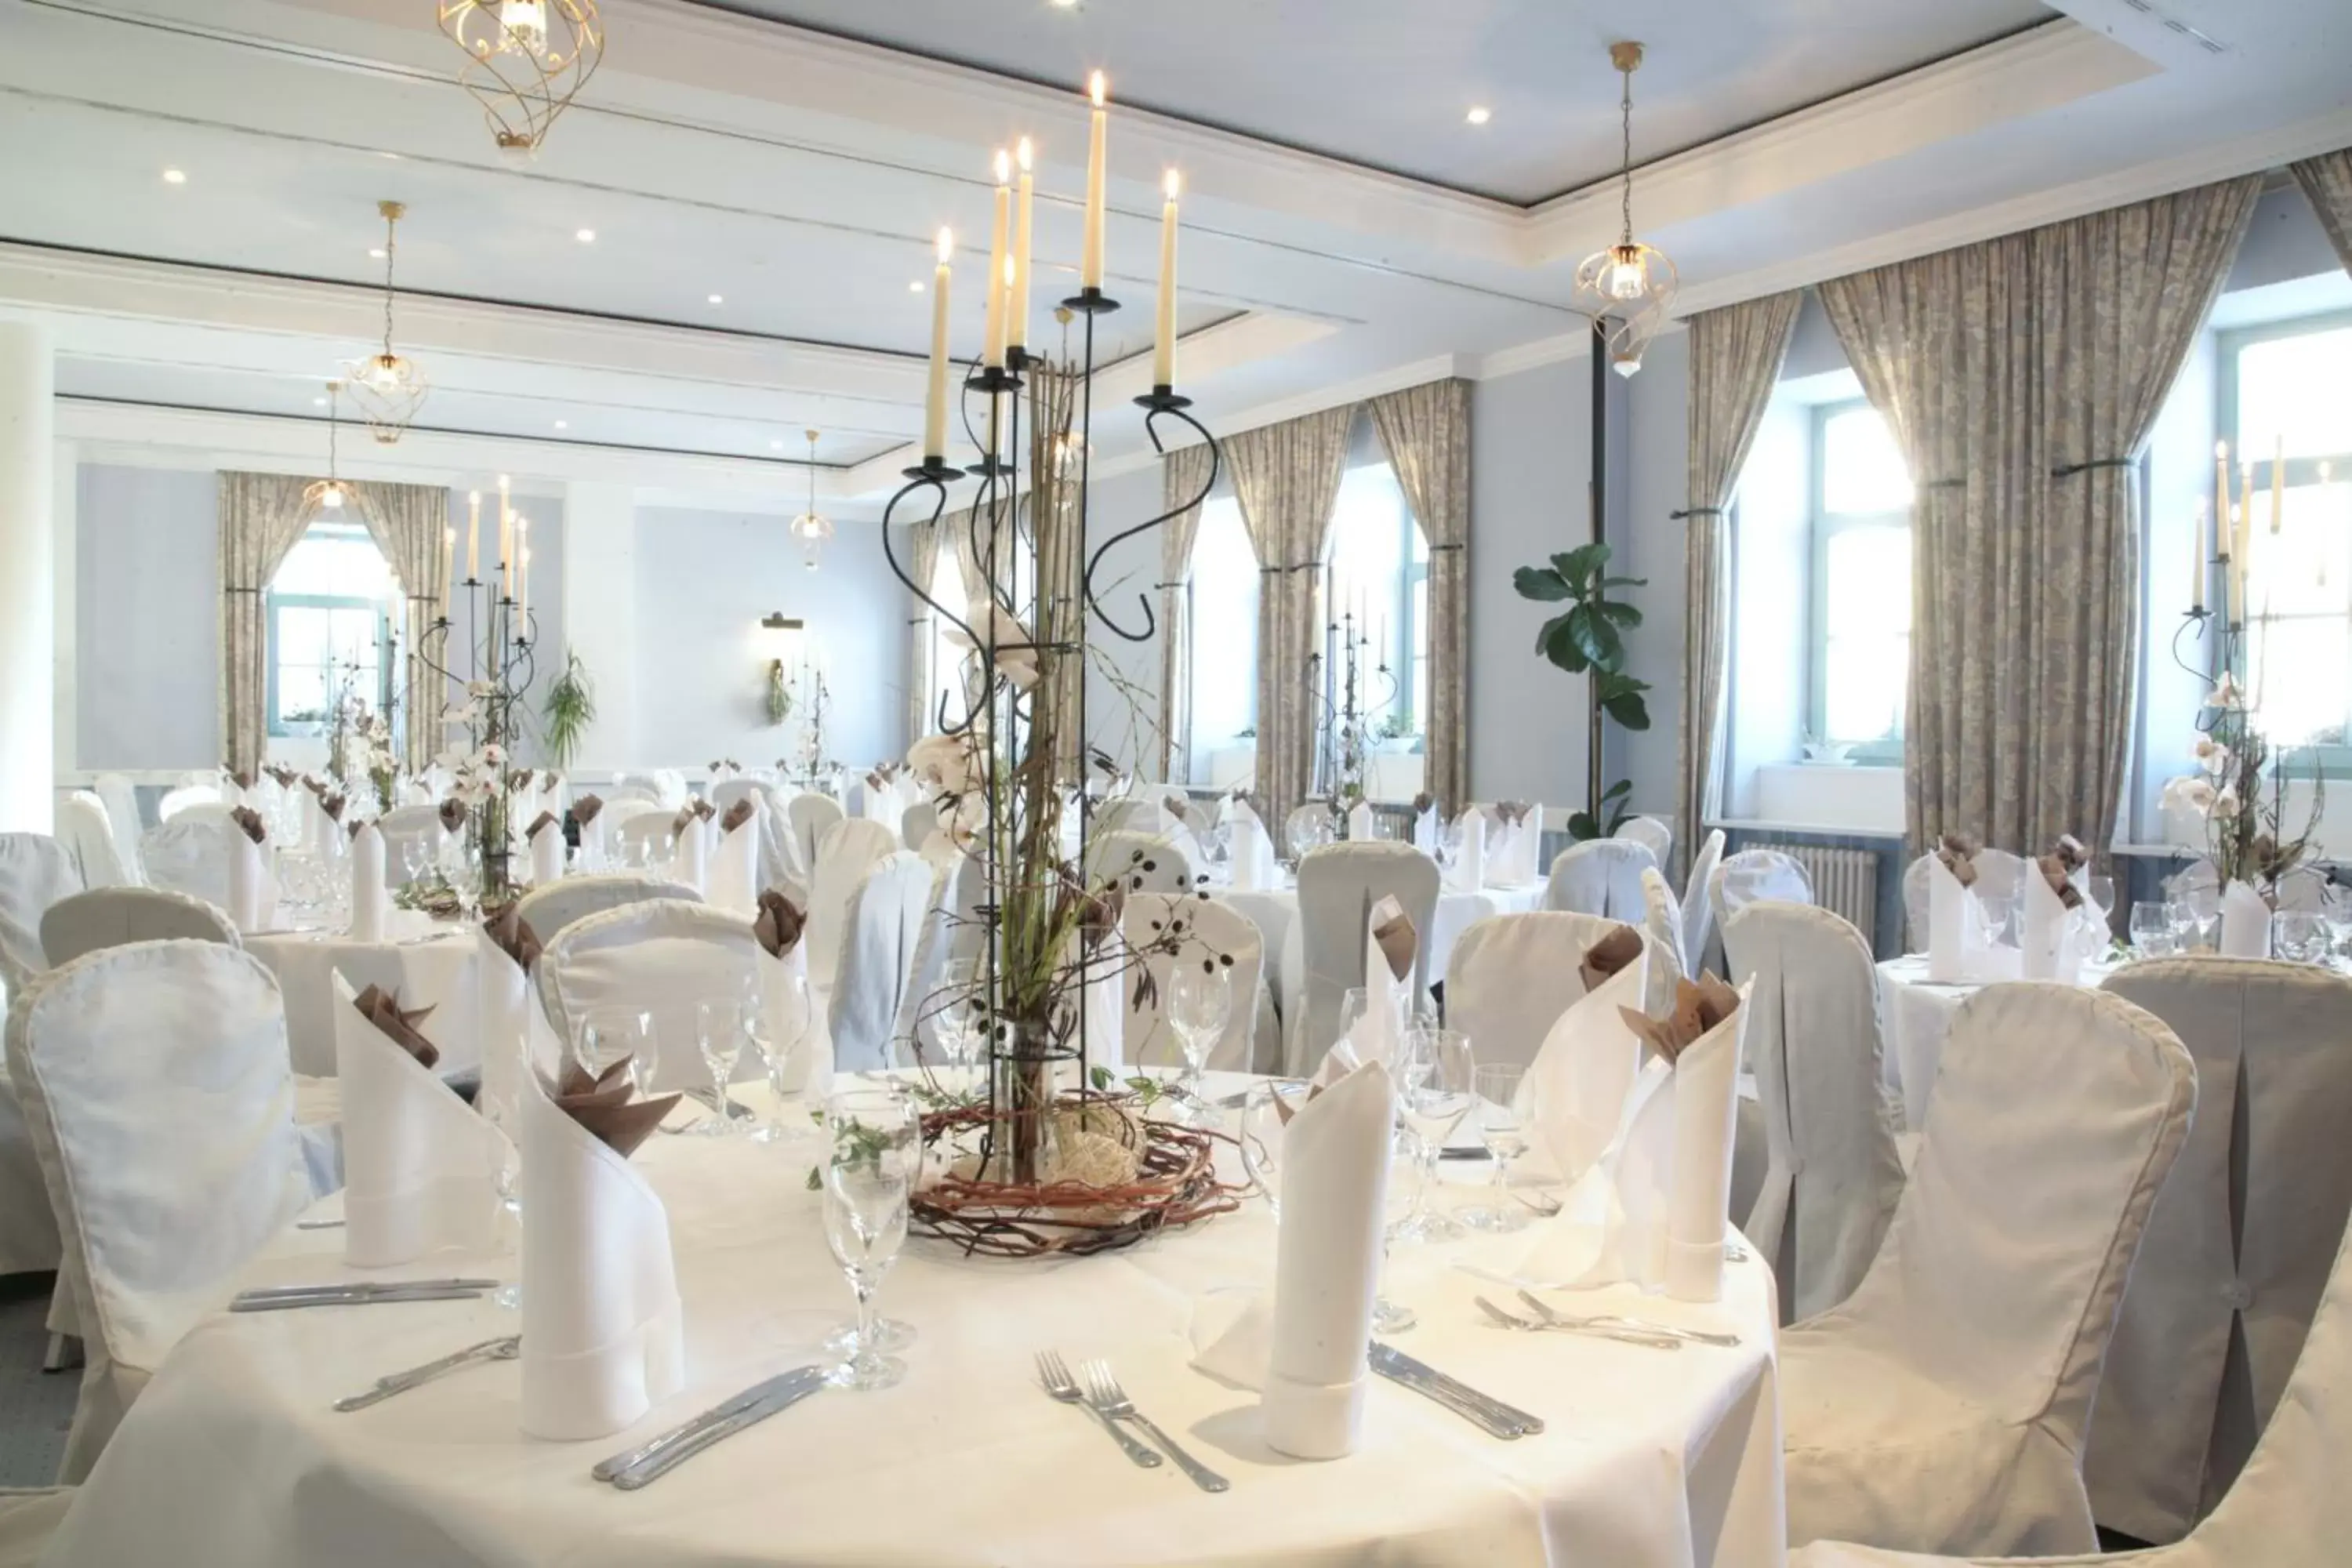 Restaurant/places to eat, Banquet Facilities in Schloss Hotel Dresden Pillnitz